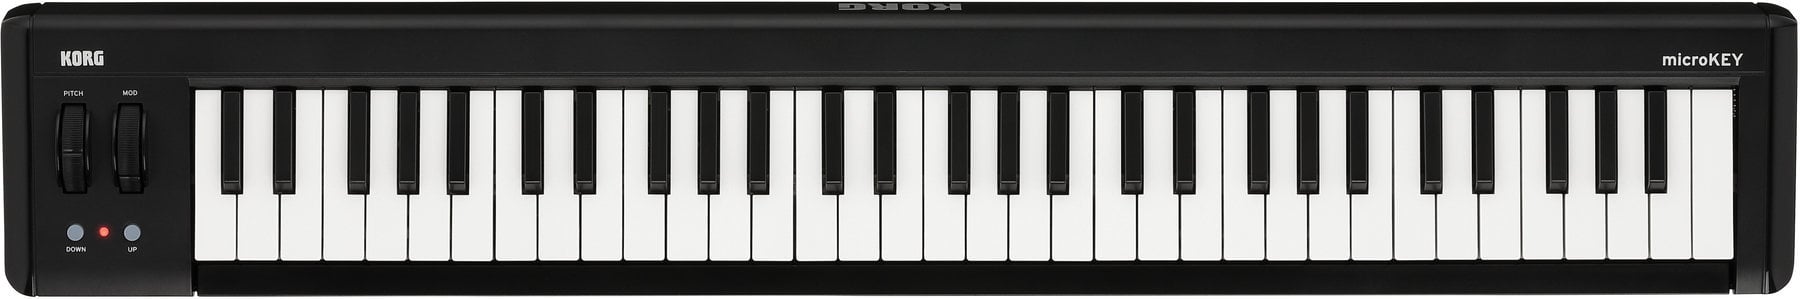 Tastiera MIDI Korg MicroKEY Air 61